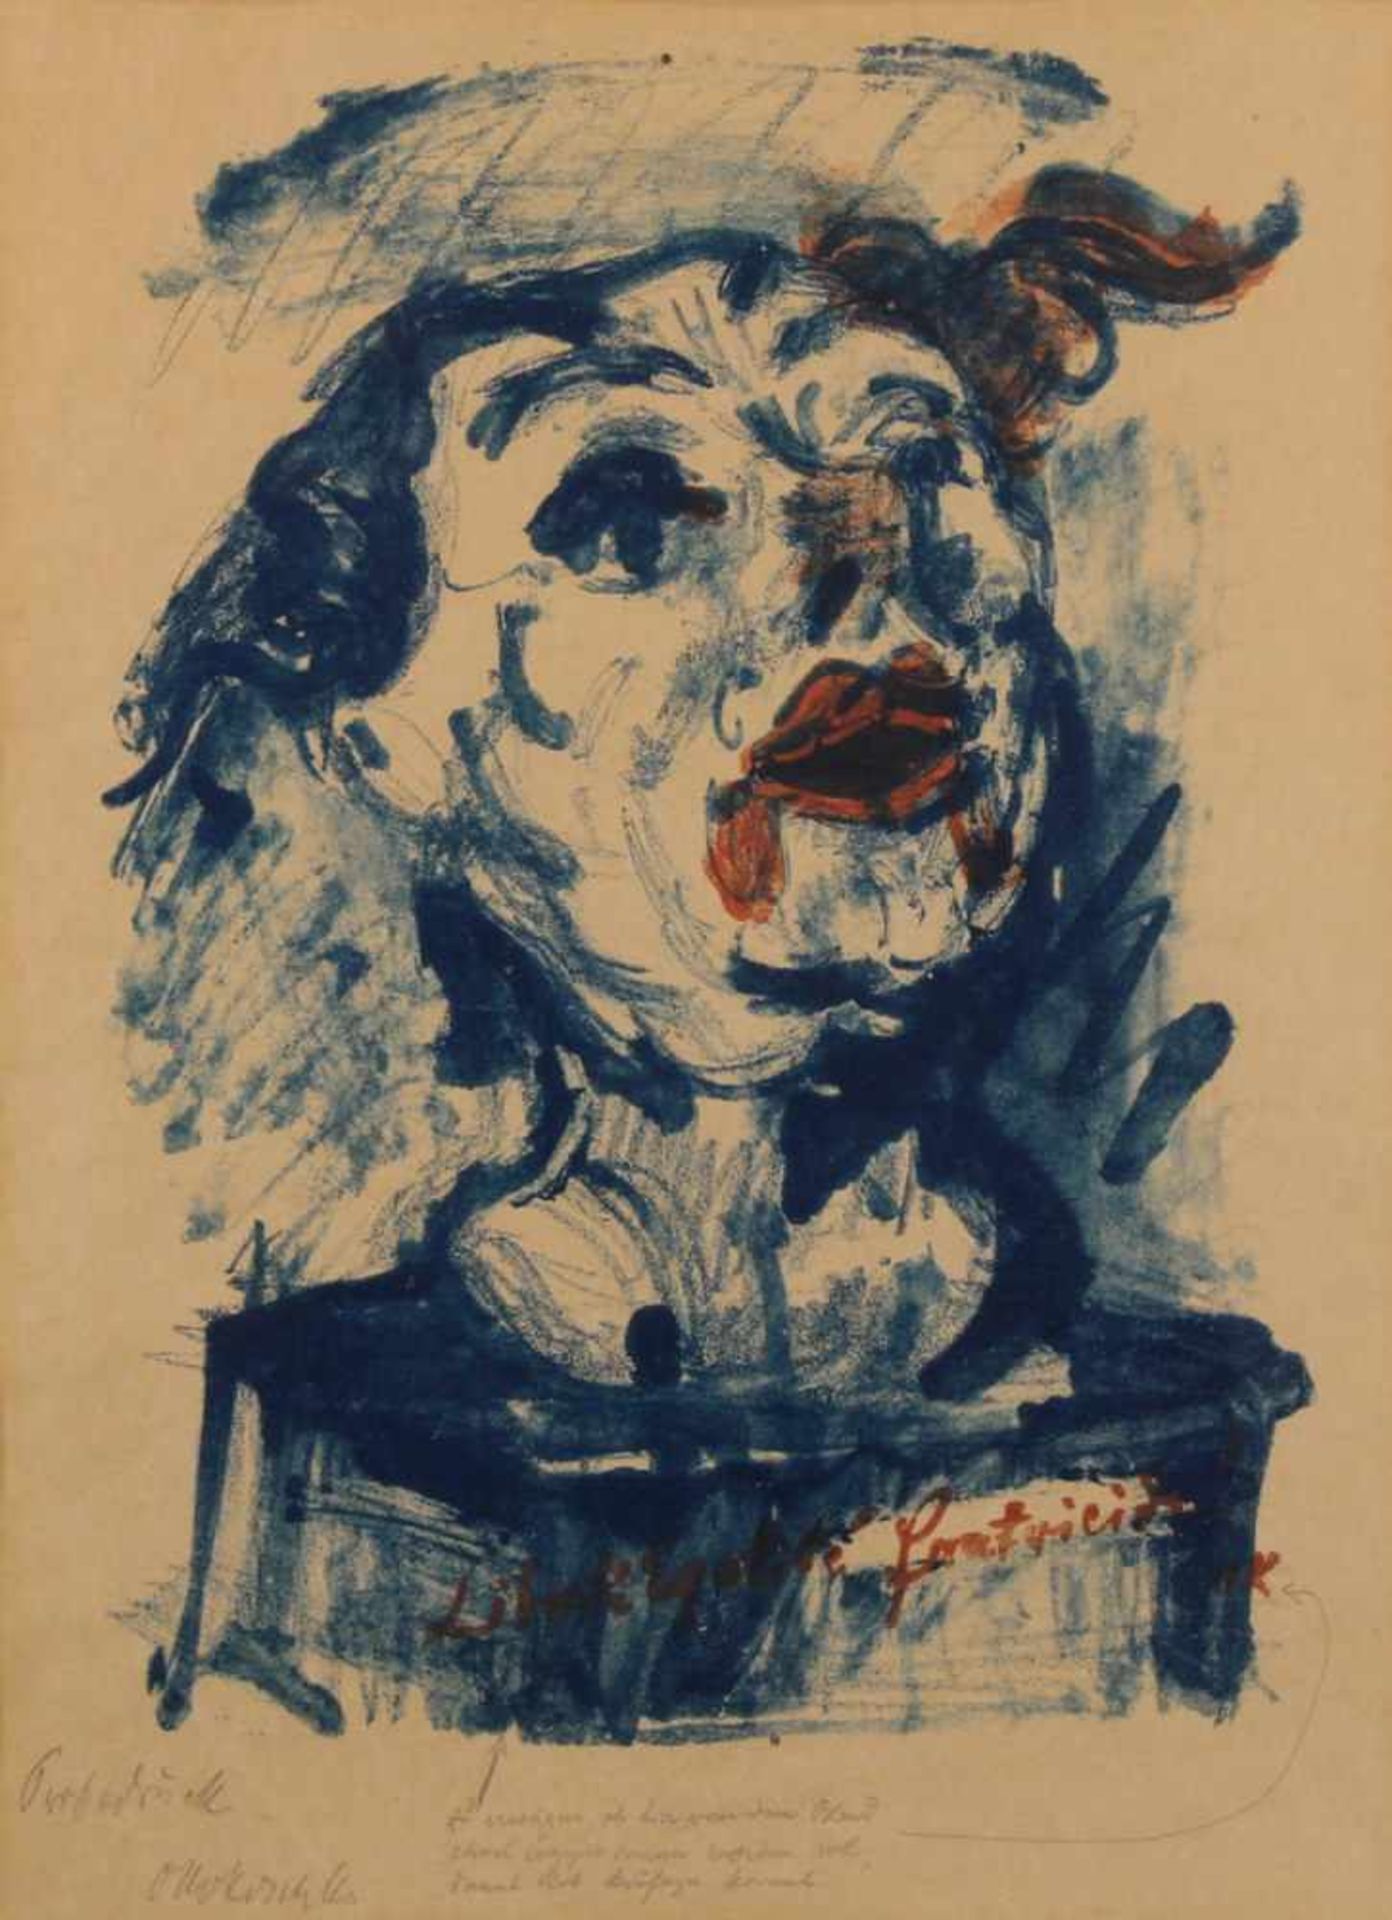 Kokoschka, Oskar (1886 Pöchlarn - 1980 Montreux, Studium an der Kunstgewerbeschule des